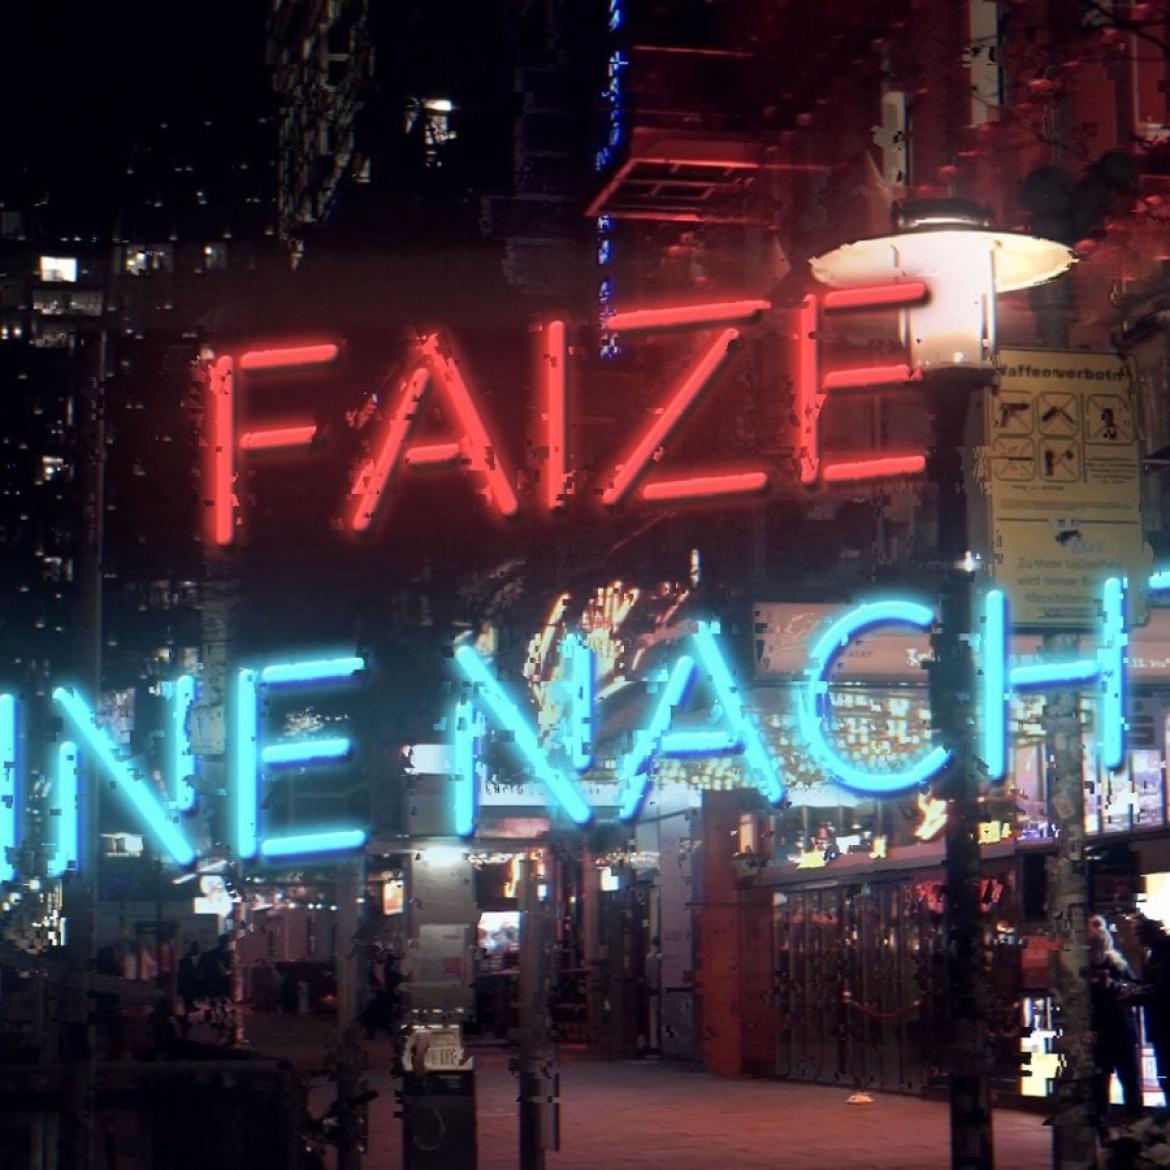 Faize - Eine Nacht